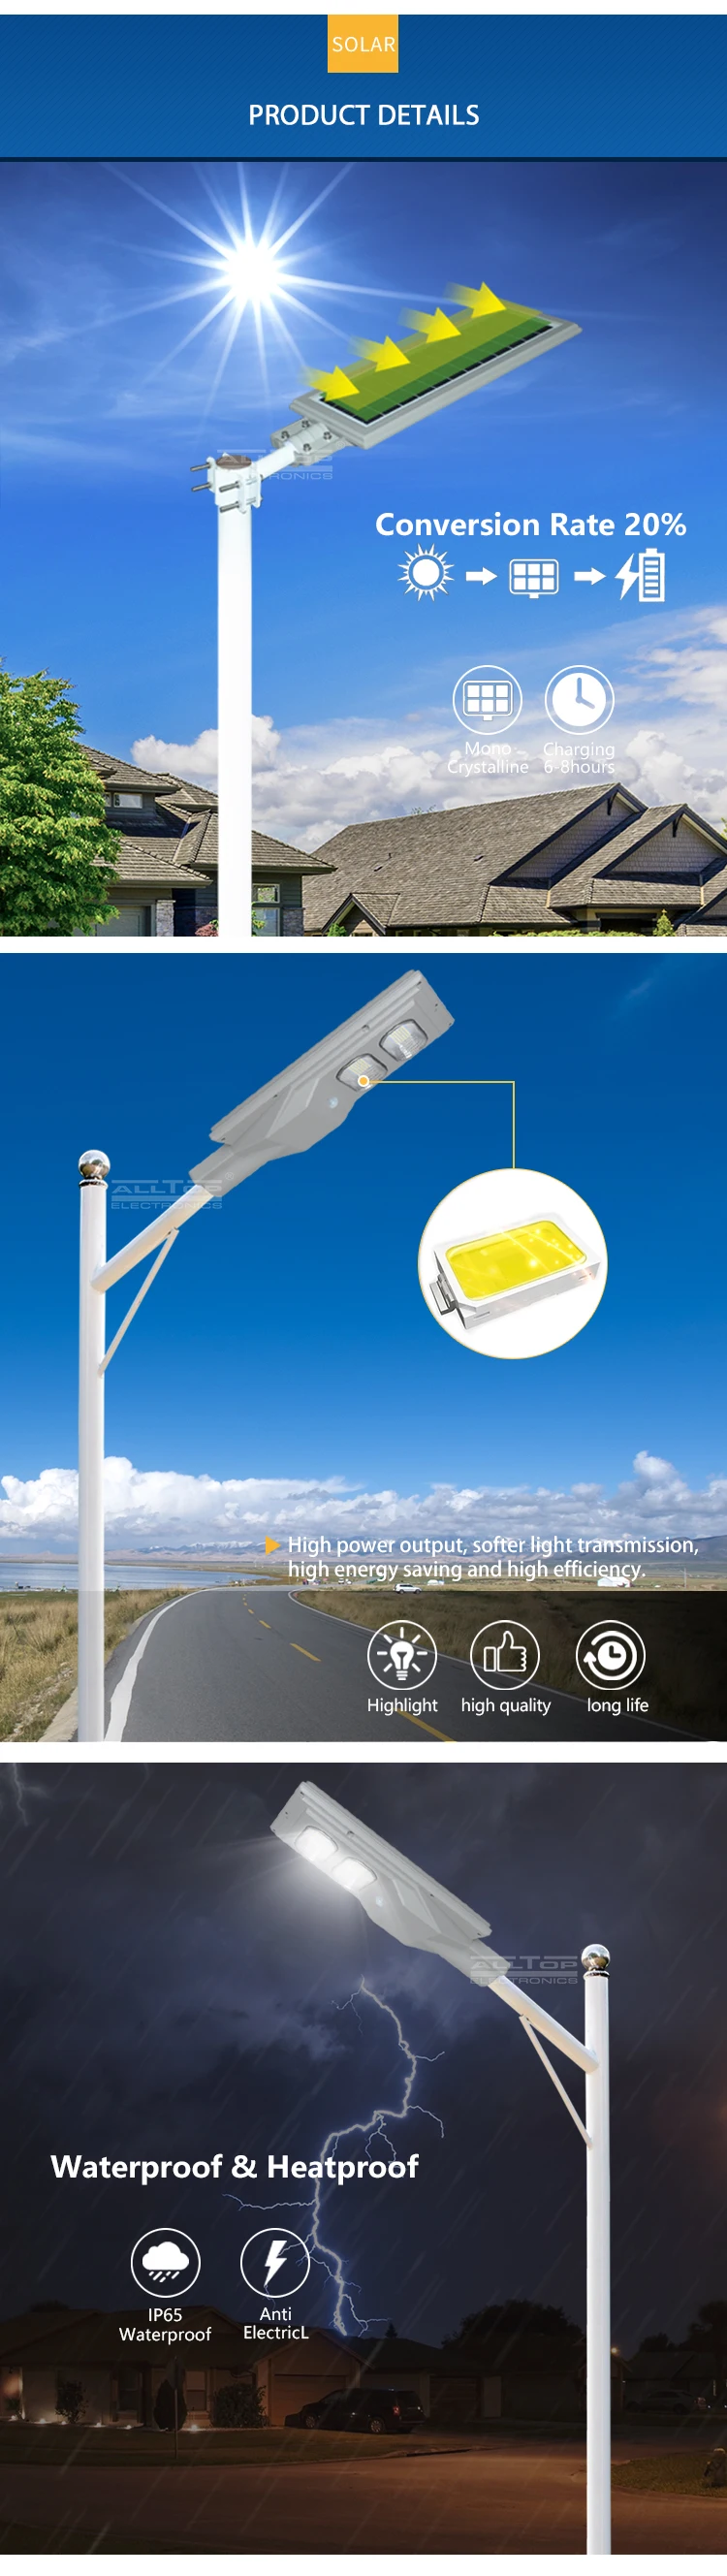 ALLTOP ABS Motion sensor 30w 60w 90w 120w 150w integrated all in one solar street light